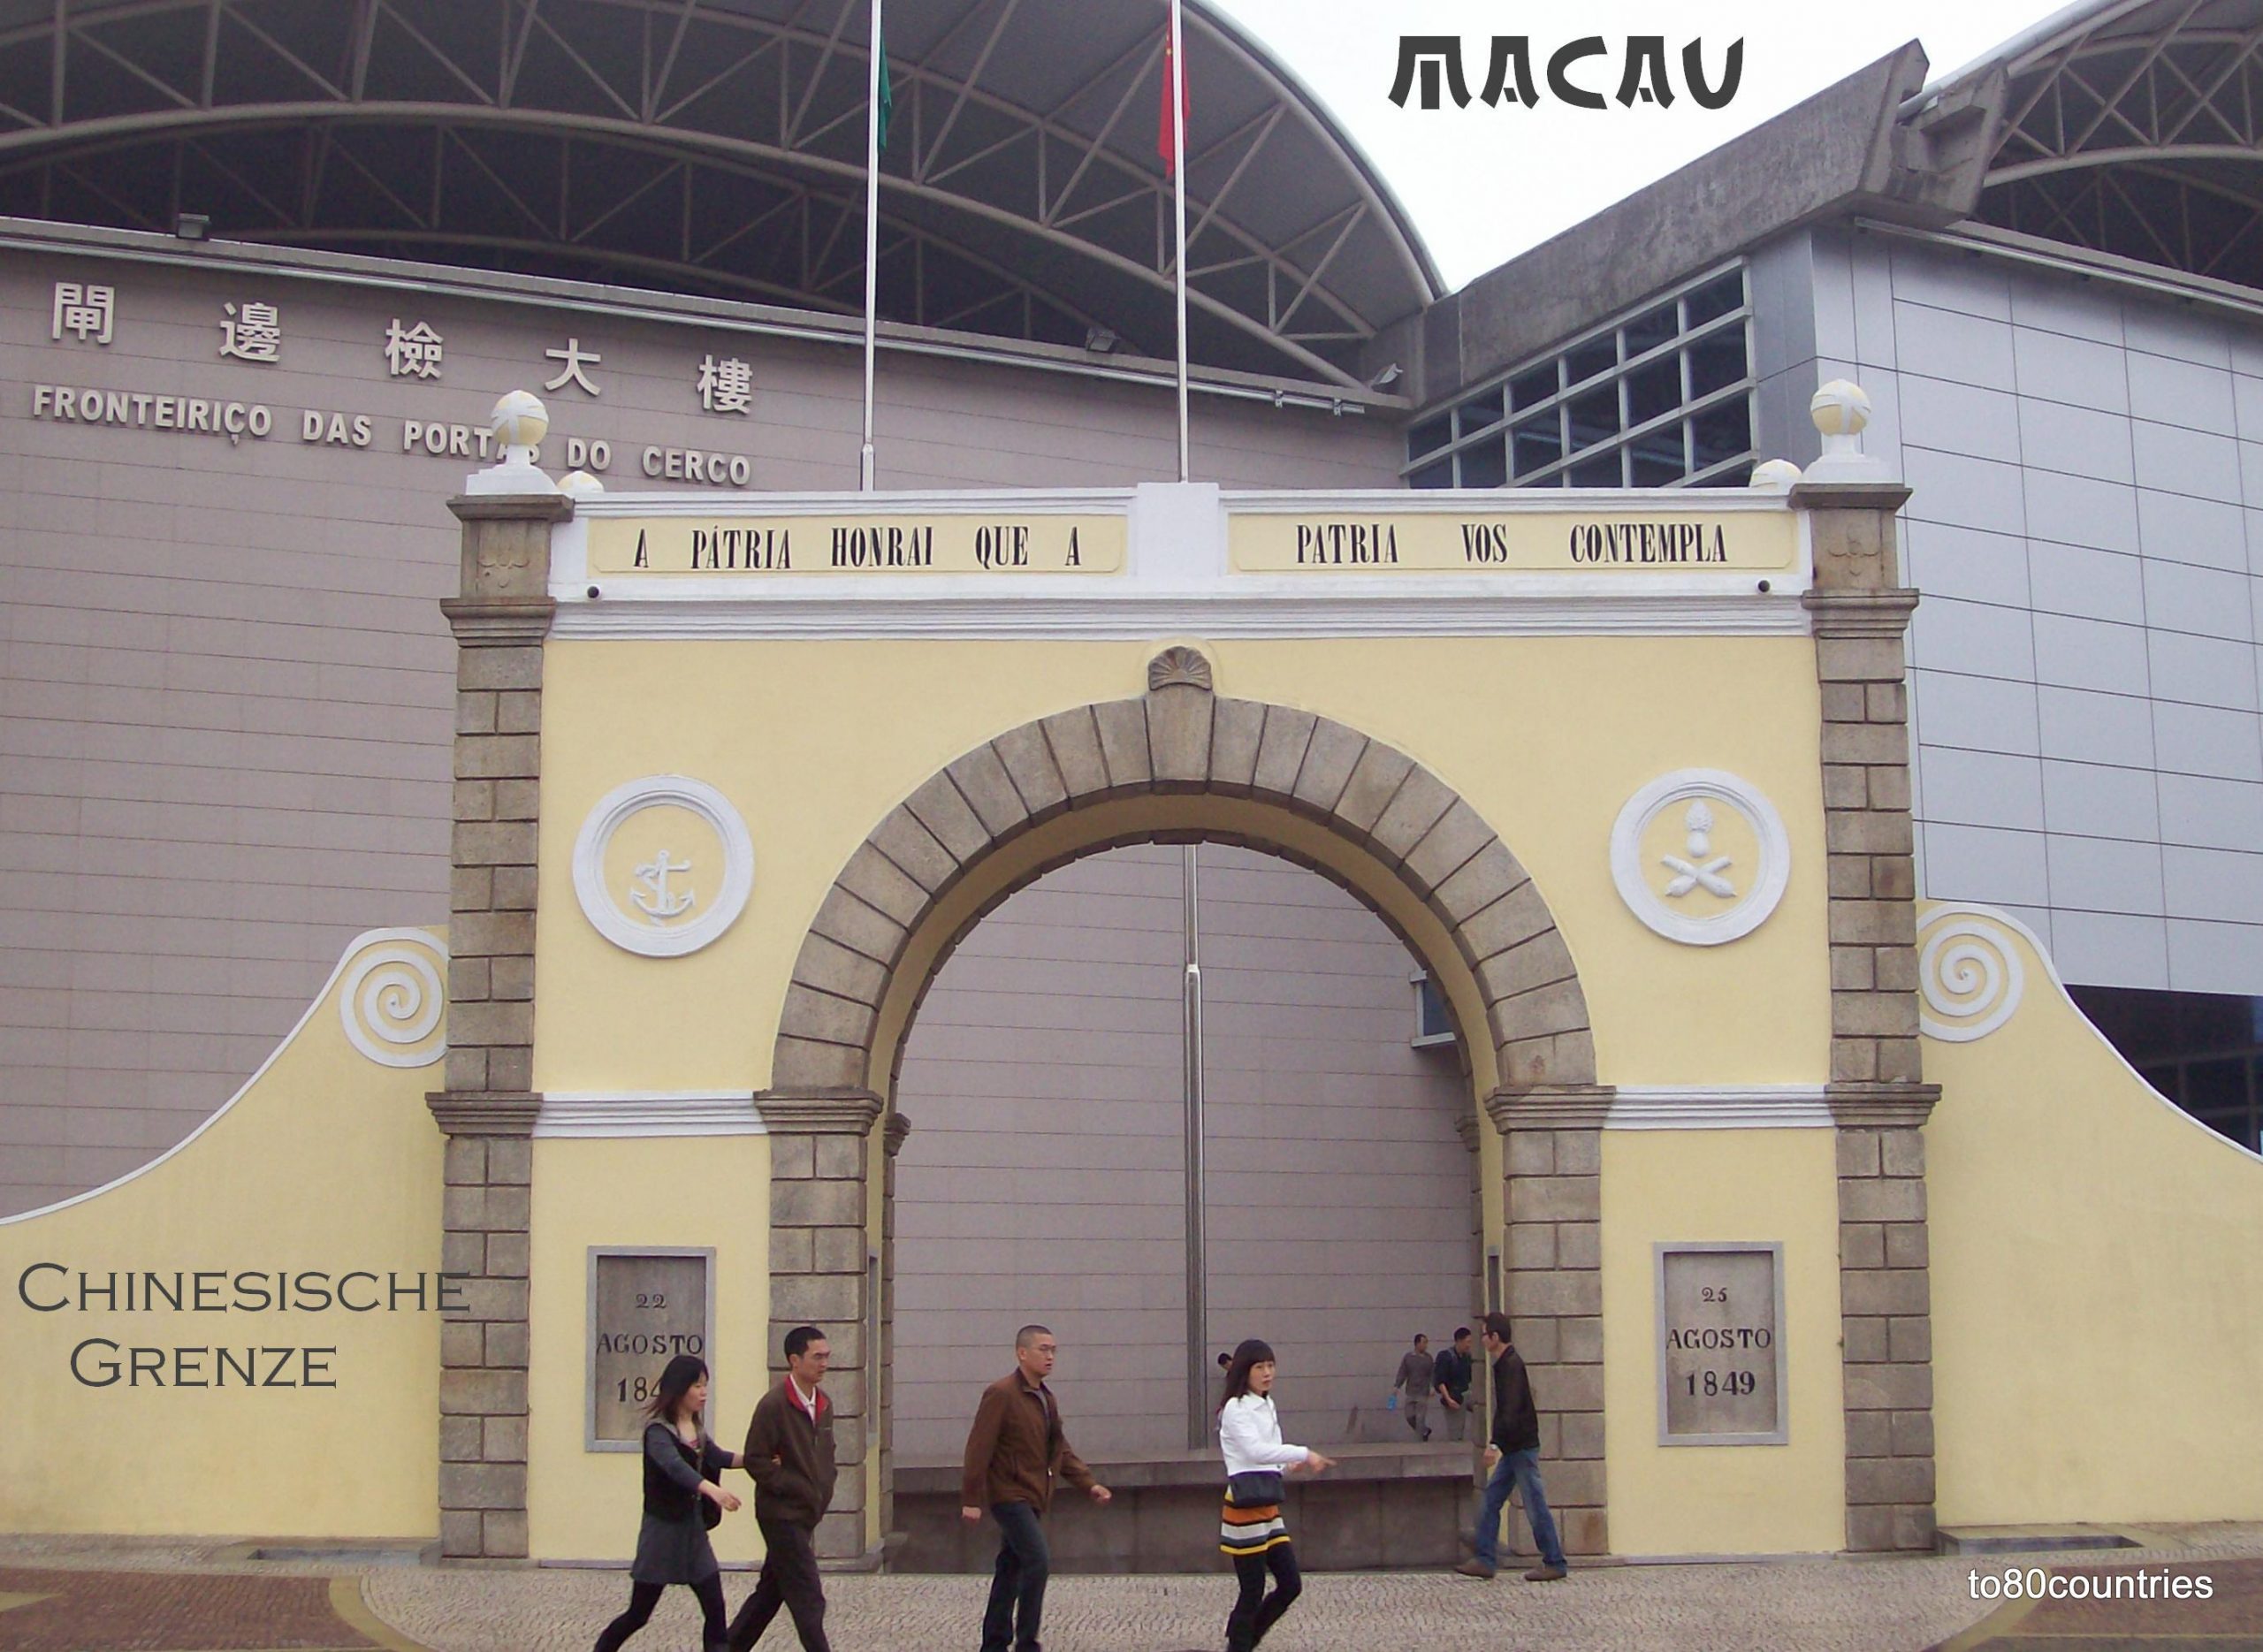 Portas do Cerco - Macau